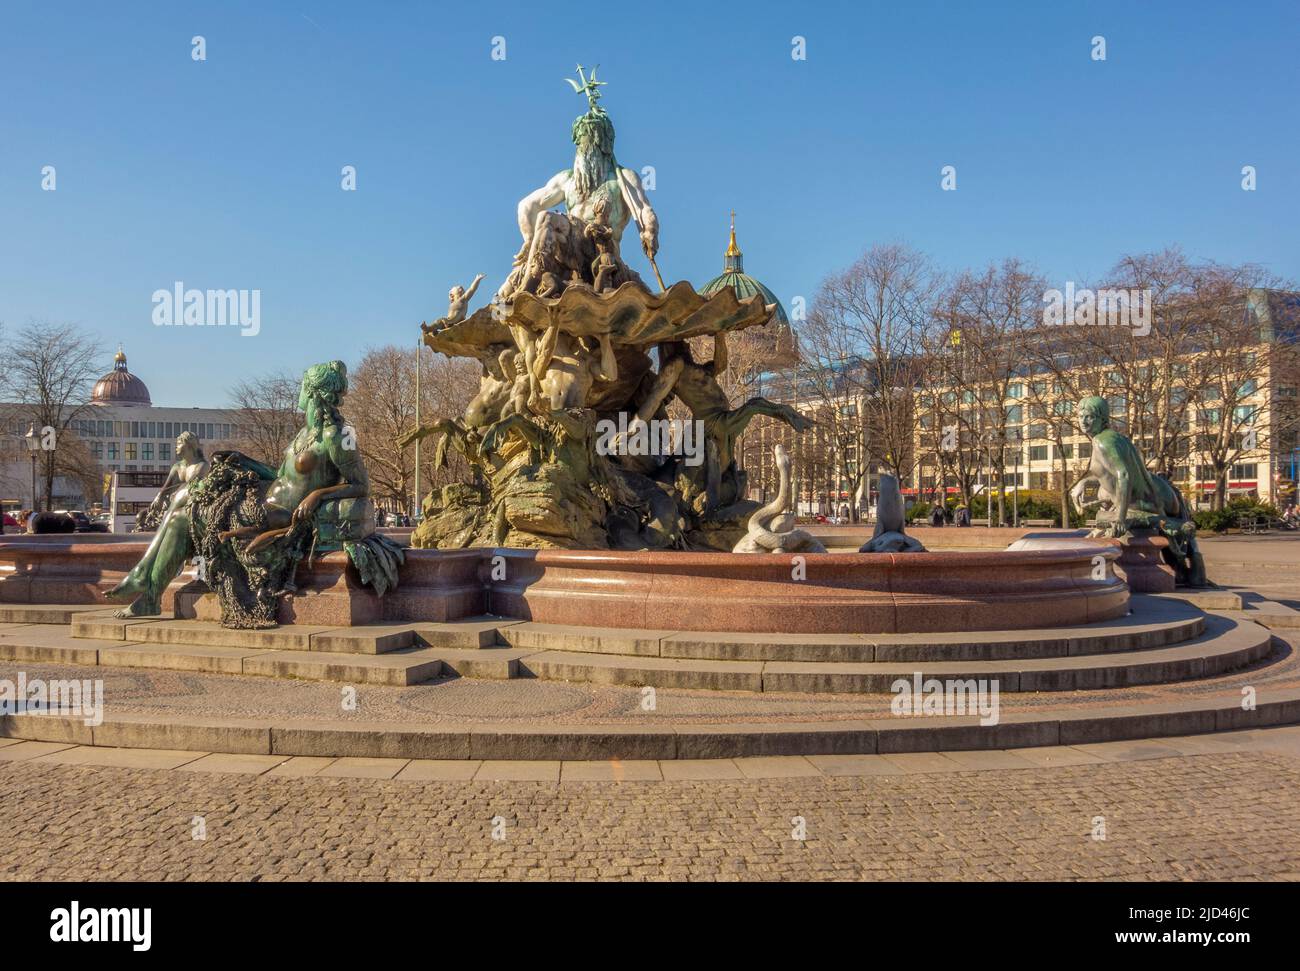 Fontaine de Neptune à Berlin, la capitale et la plus grande ville d'Allemagne Banque D'Images